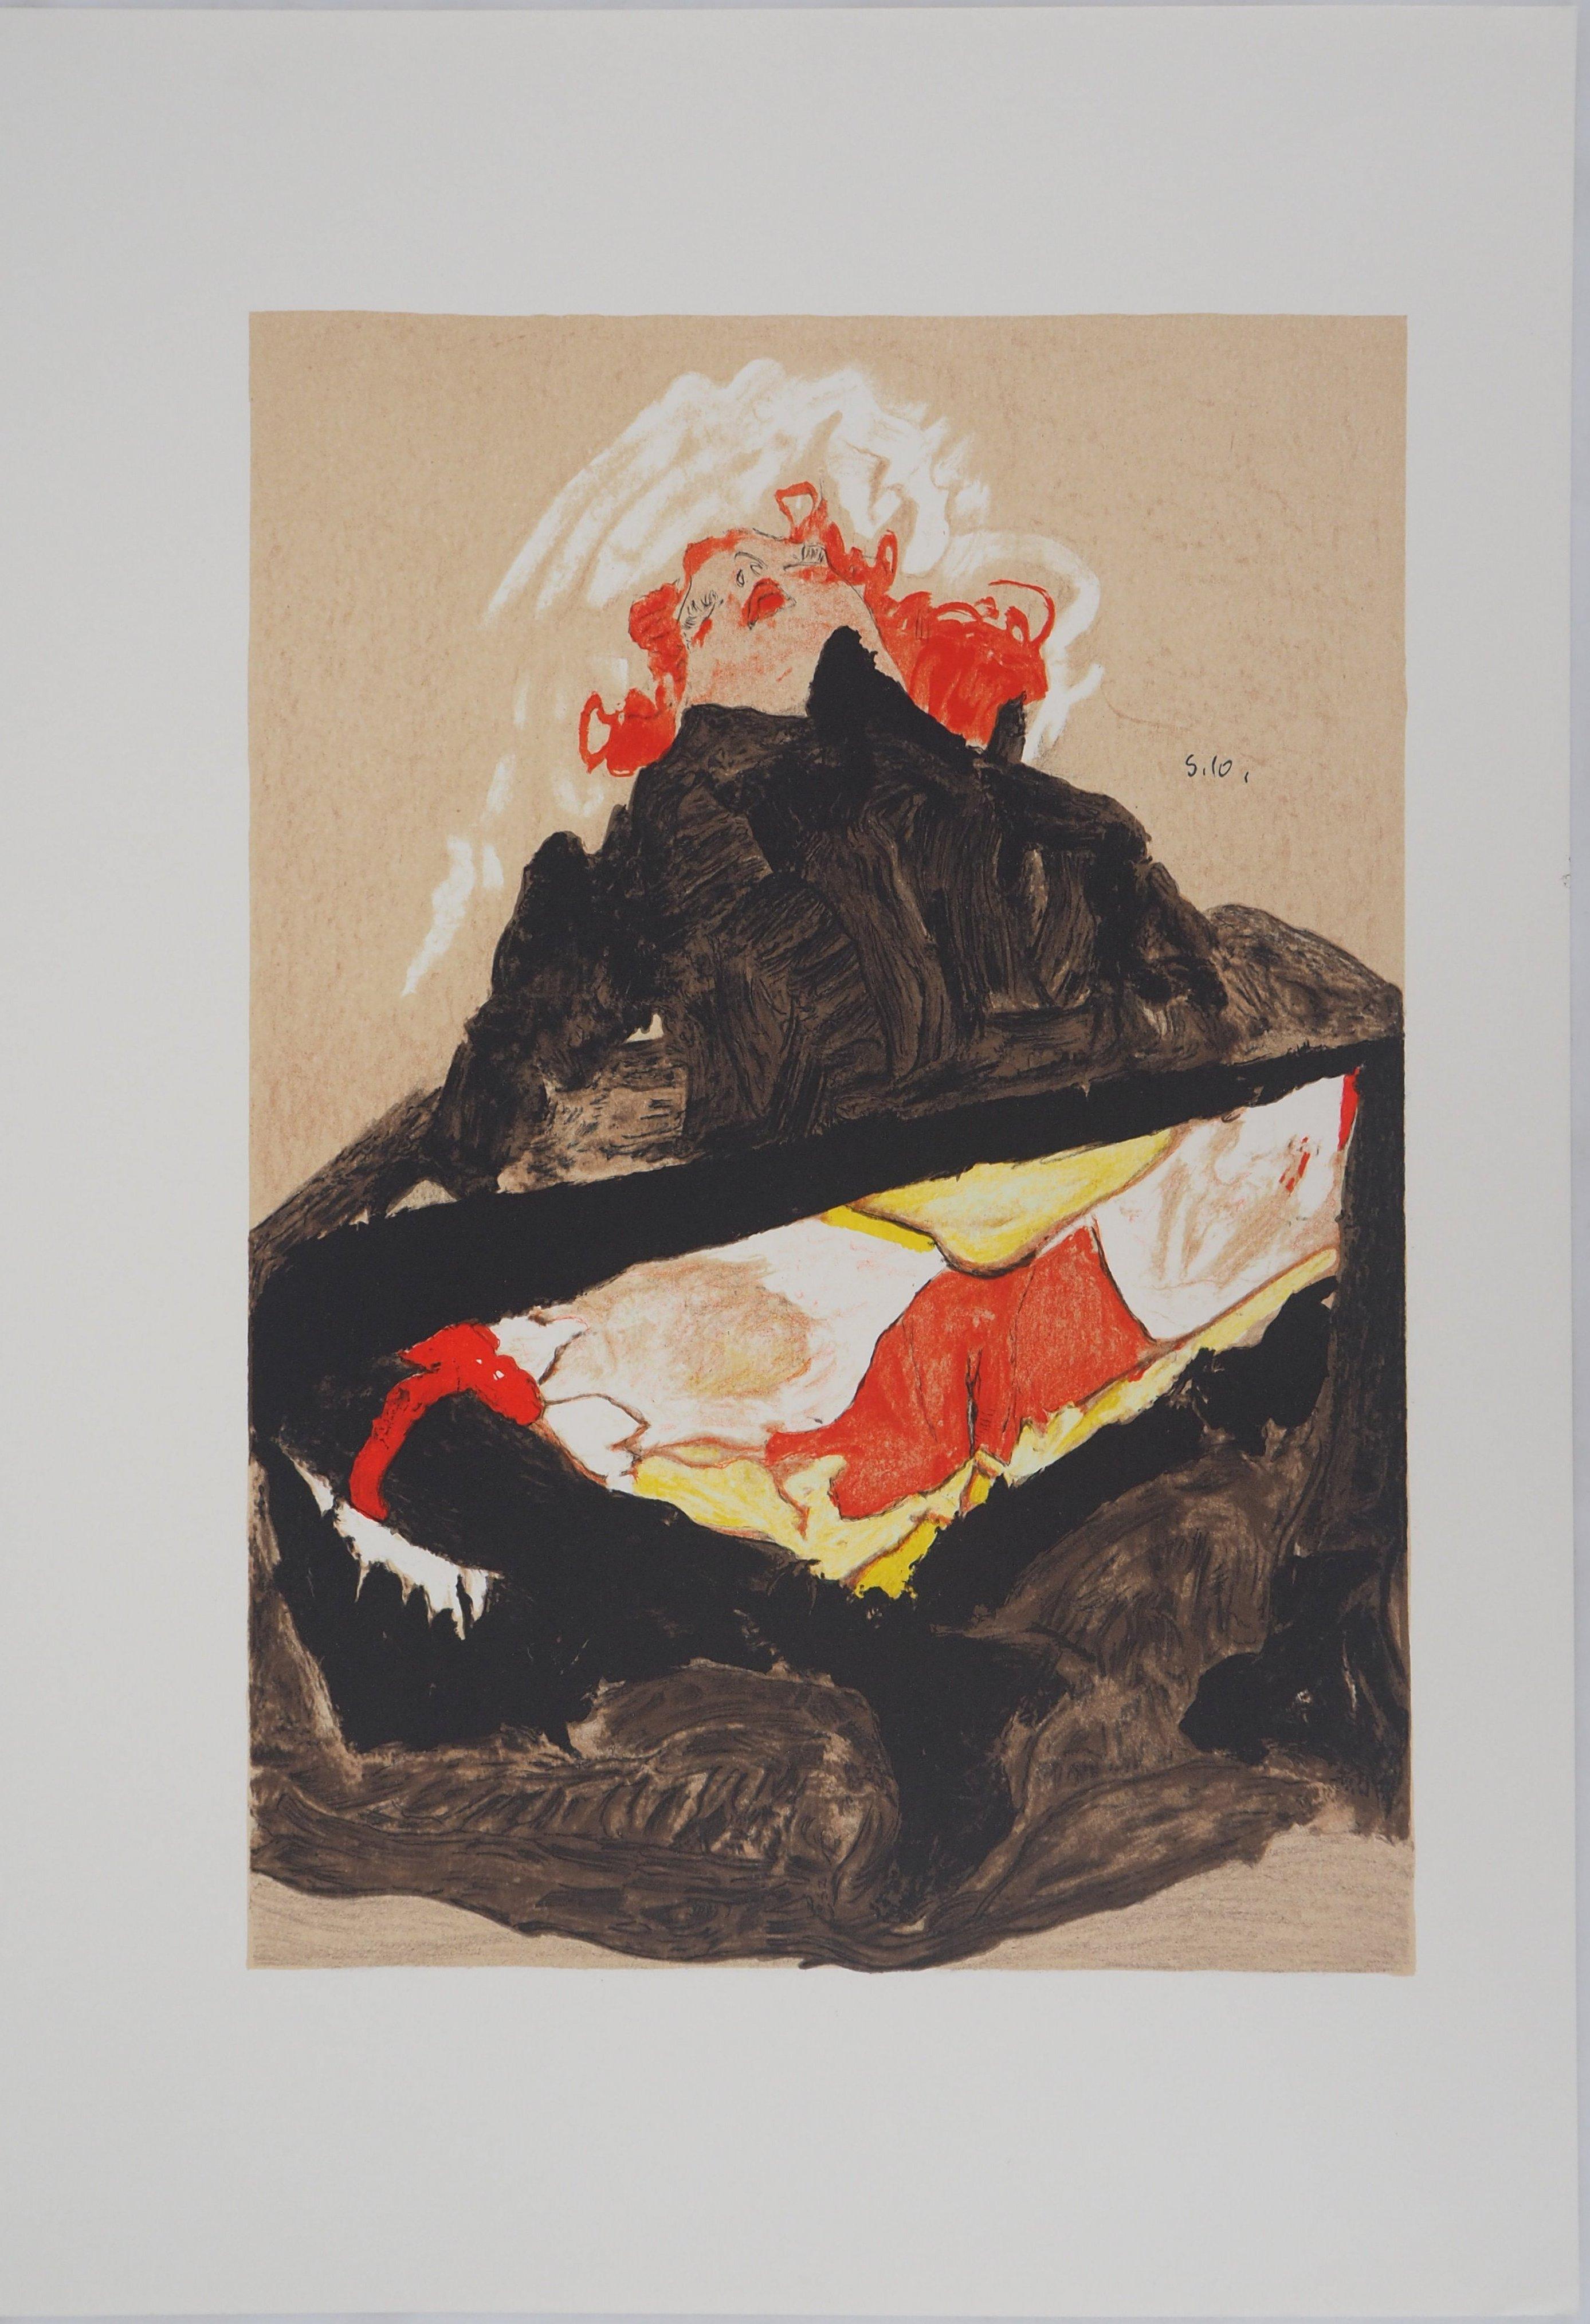 La femme aux cheveux rouges - Lithographie - Print de (after) Egon Schiele